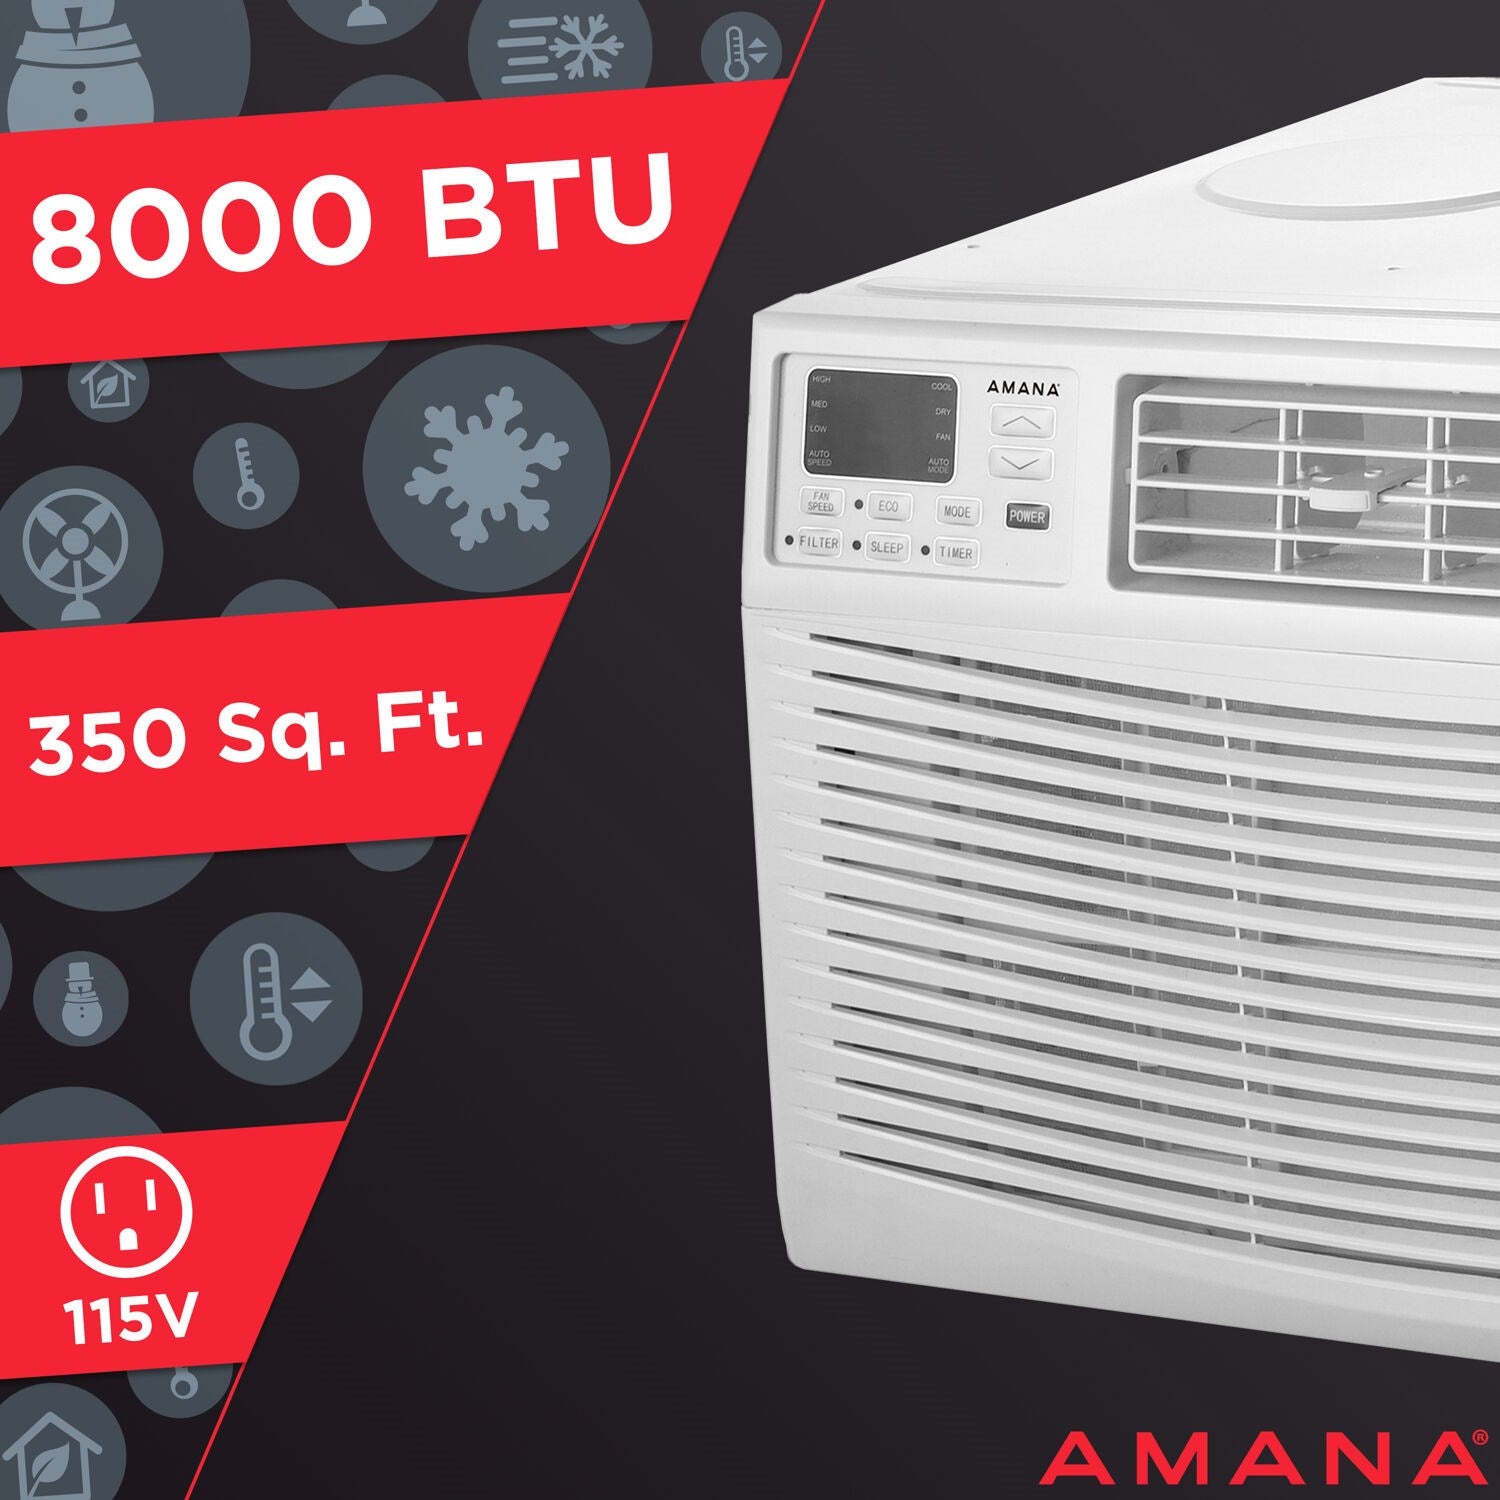 Amana - 8,000 BTU Window AC with Electronic Controls | AMAP081BW